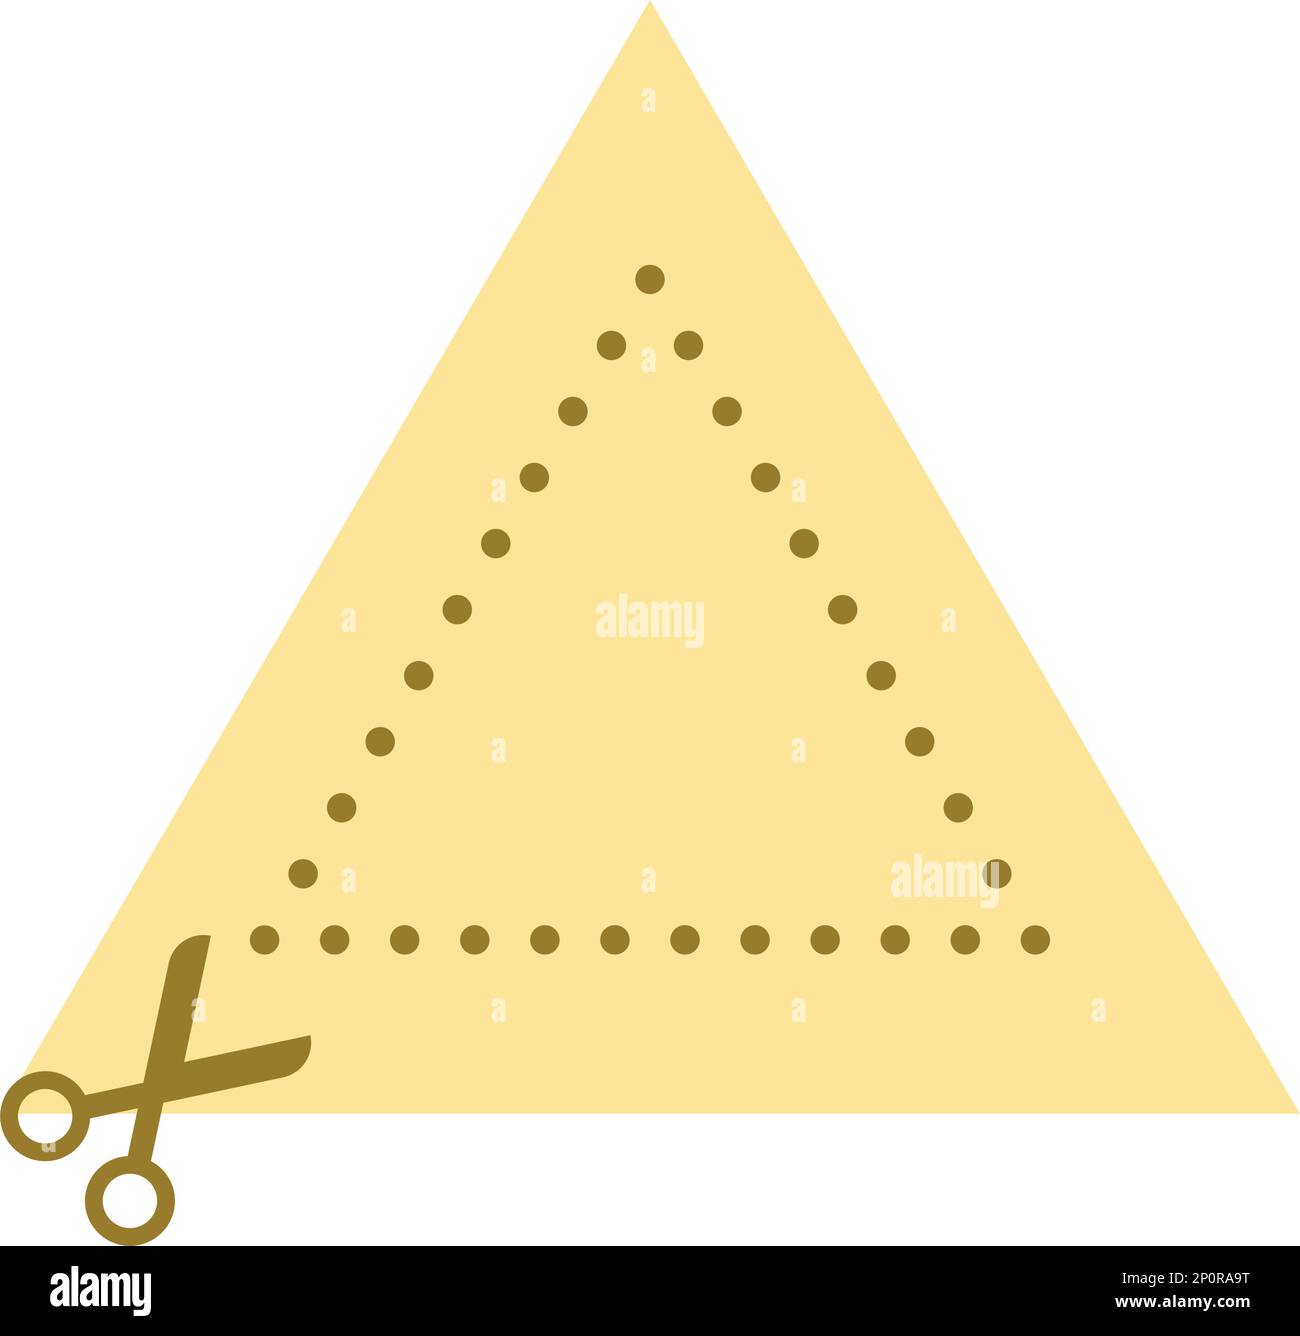 Actividades de práctica de corte elemento de símbolo de forma de triángulo para la actividad de tijeras preescolares para el desarrollo de habilidades motoras para niños Ilustración del Vector